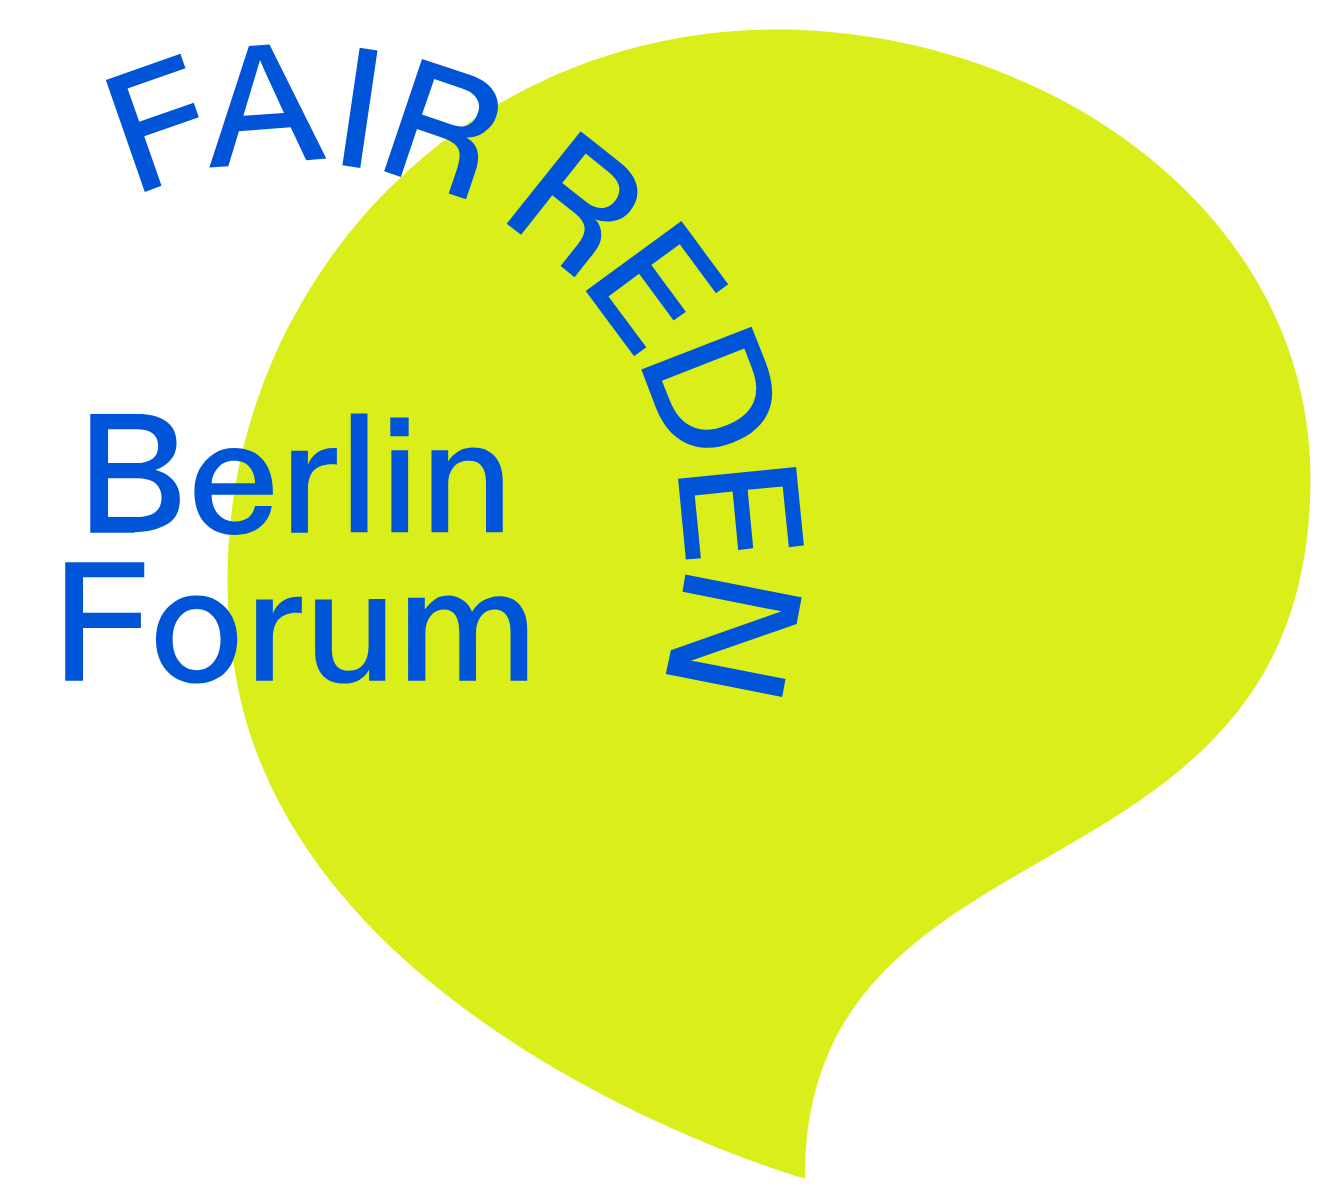 neon-grüne Sprechblase im Hintergrund, darüber links-zentriert in runden, blauben Großbuchstaben "FAIR REDEN", darunter "Berlin Forum"